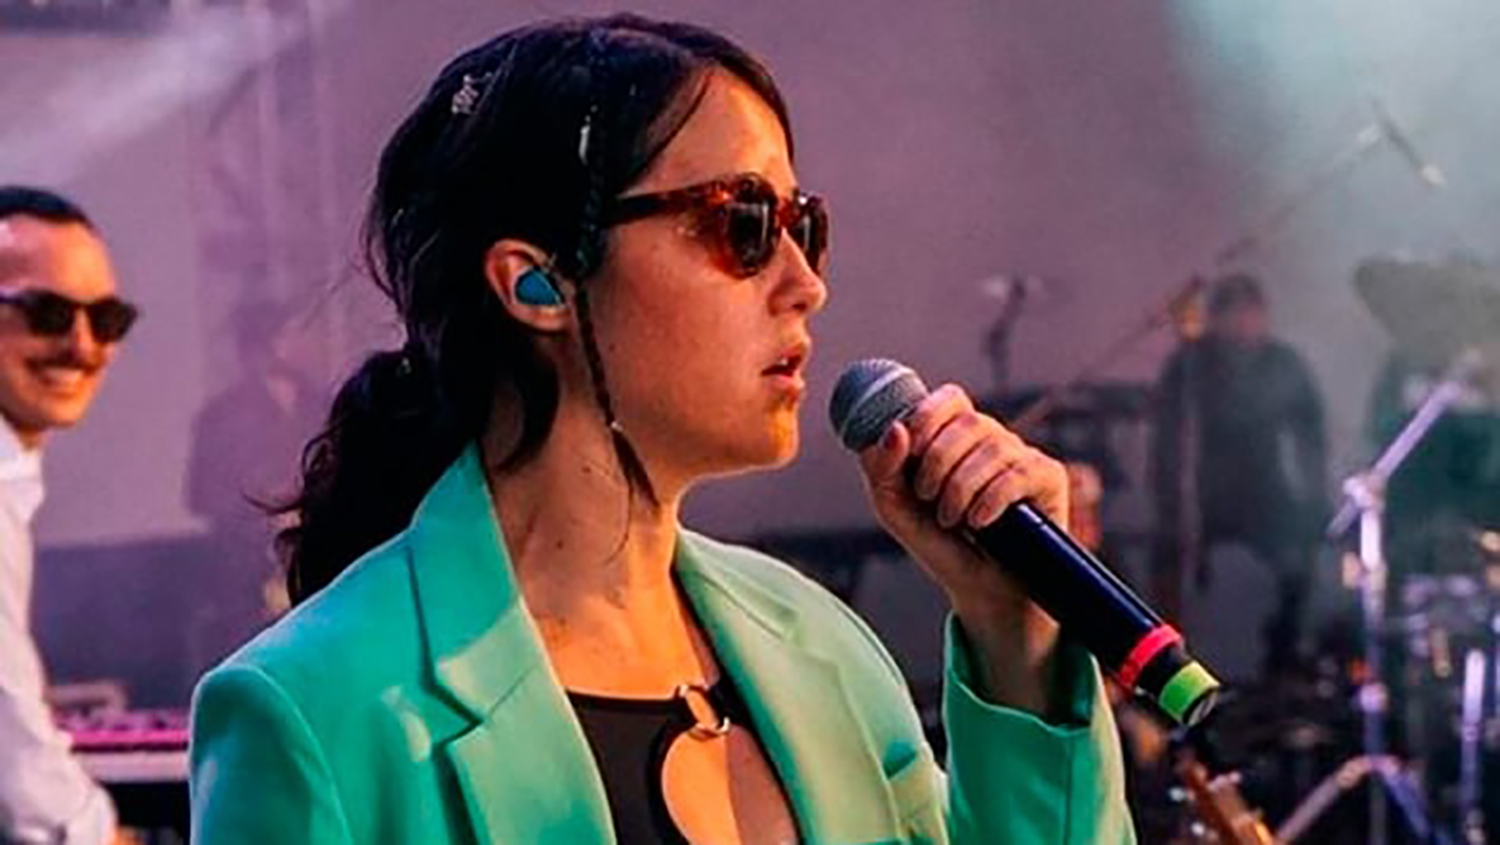 Ximena Sariñana denuncia agresiones contra su staff tras concierto en Texcoco: ‘Duele mucho la violencia’